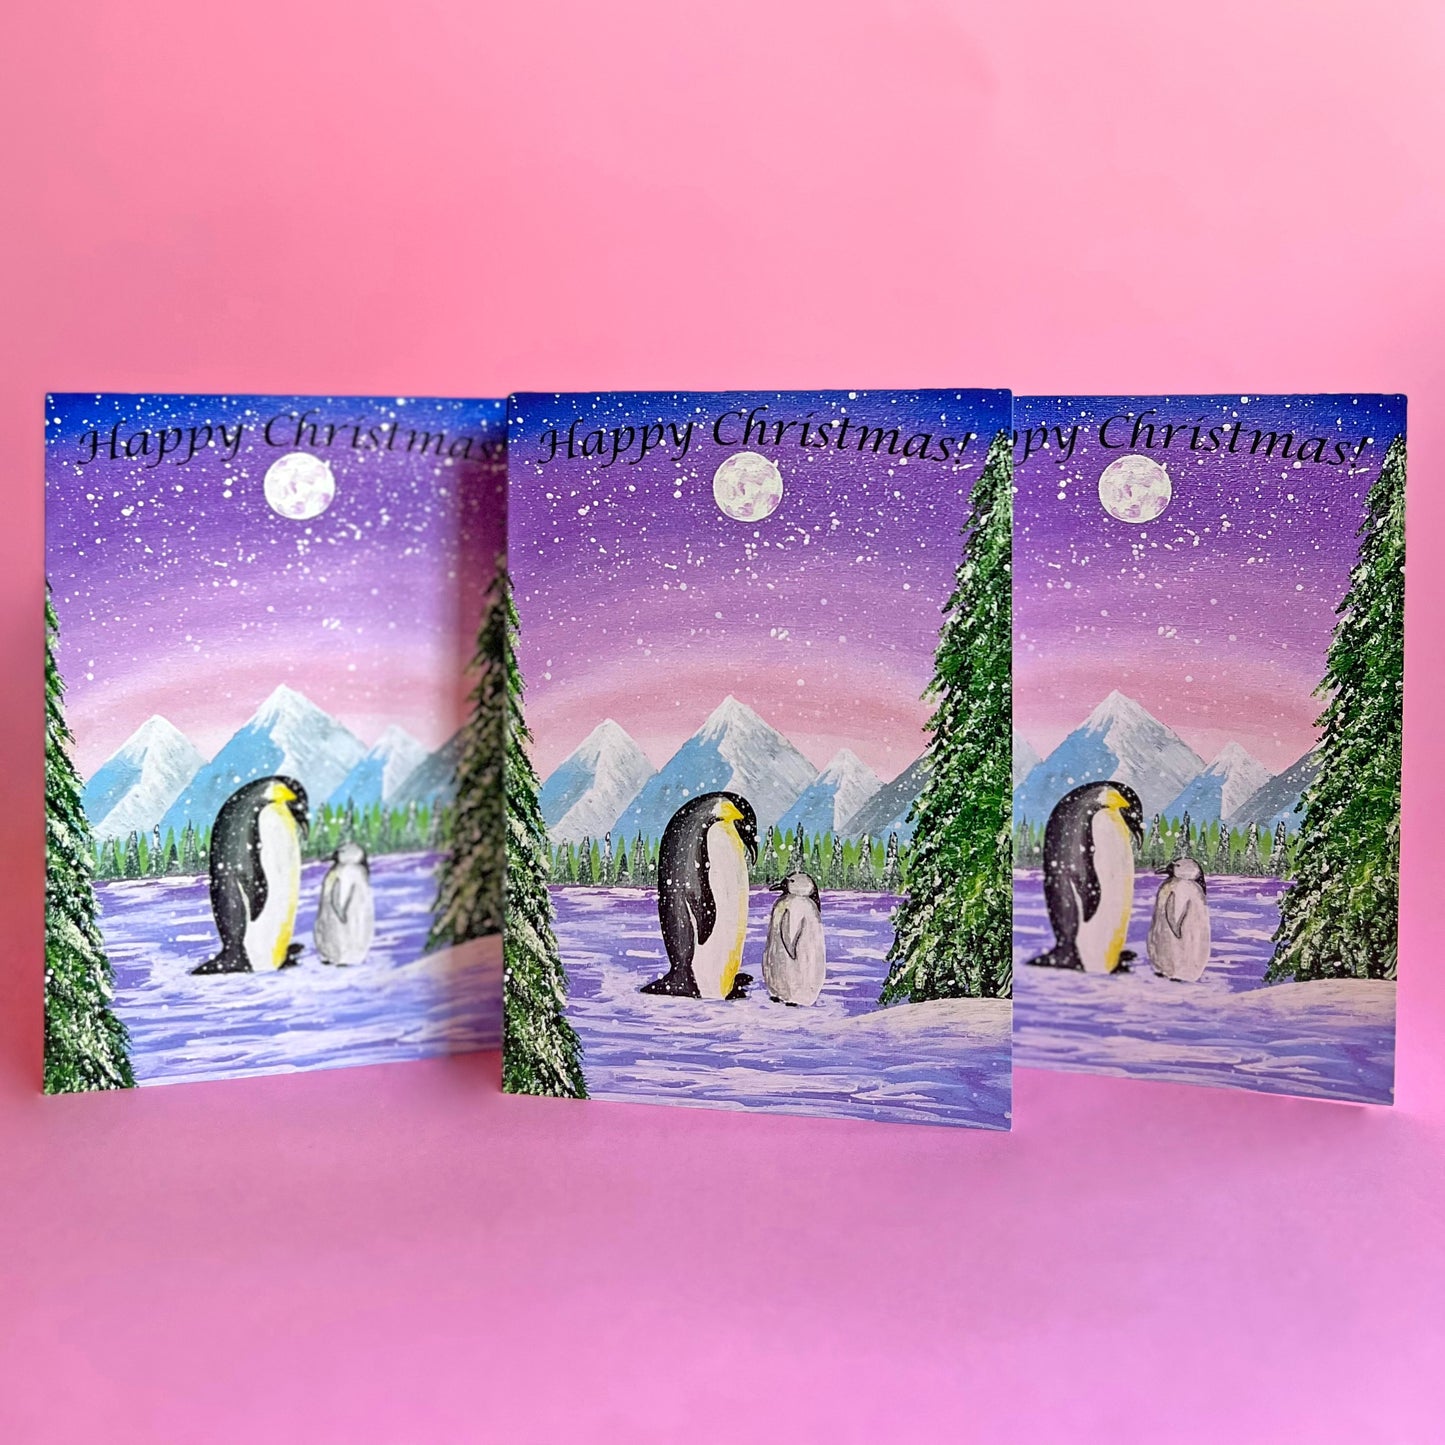 Penguin Christmas Card, Acrylic Painting Christmas Card